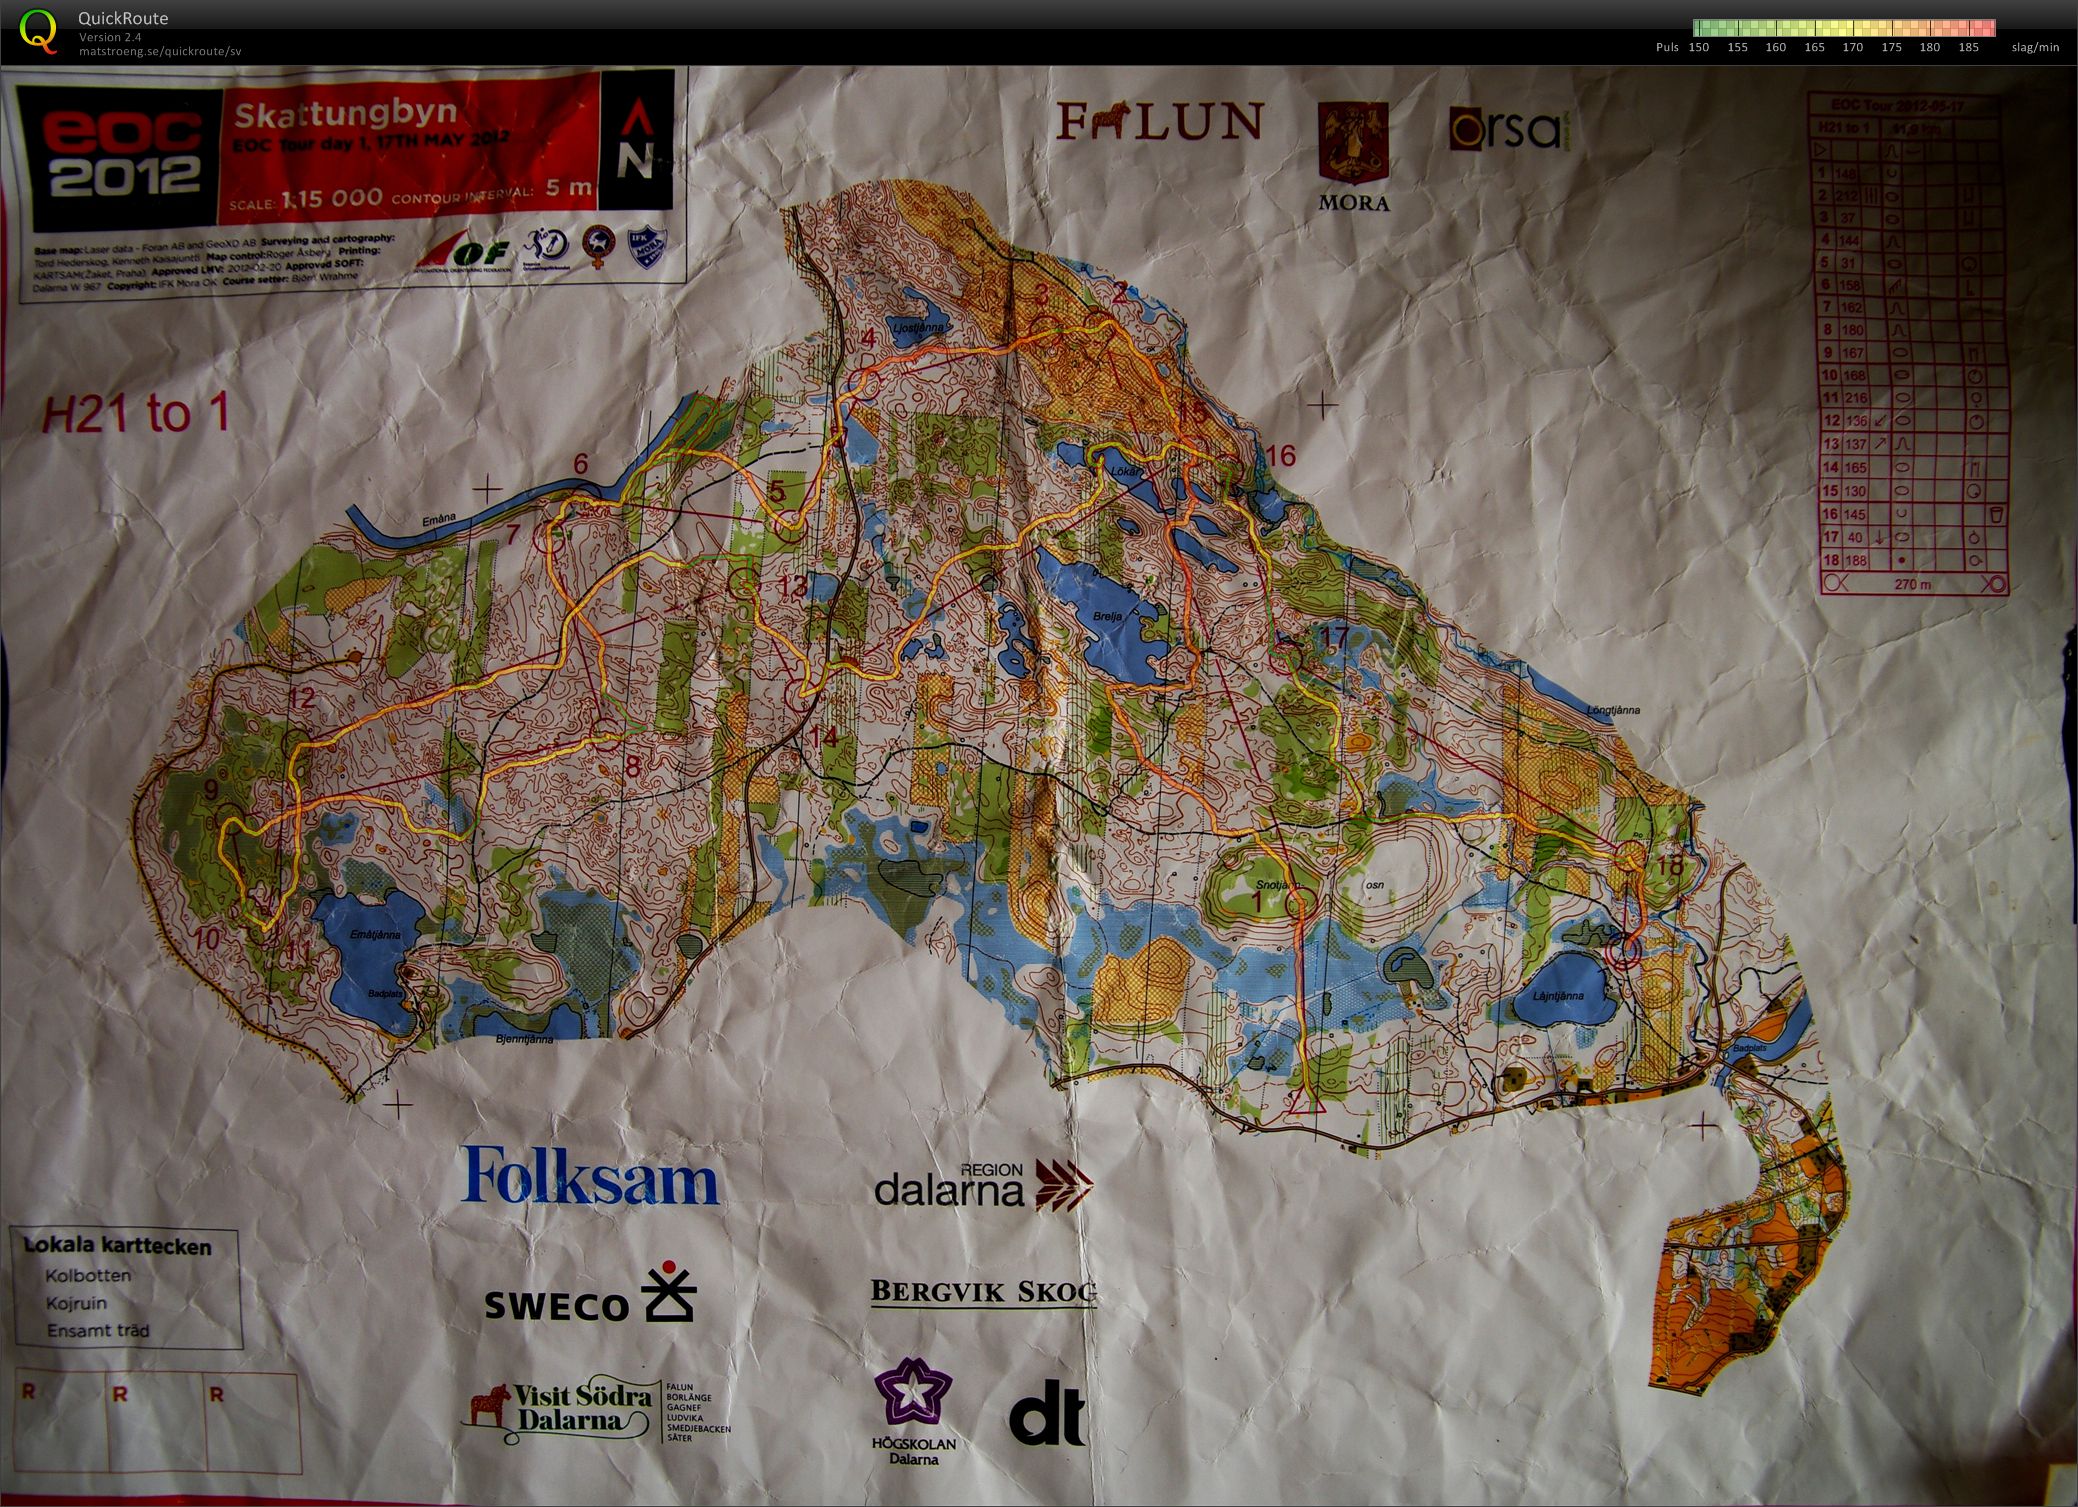 EOC Tour E1/lång (H21-1) (17-05-2012)